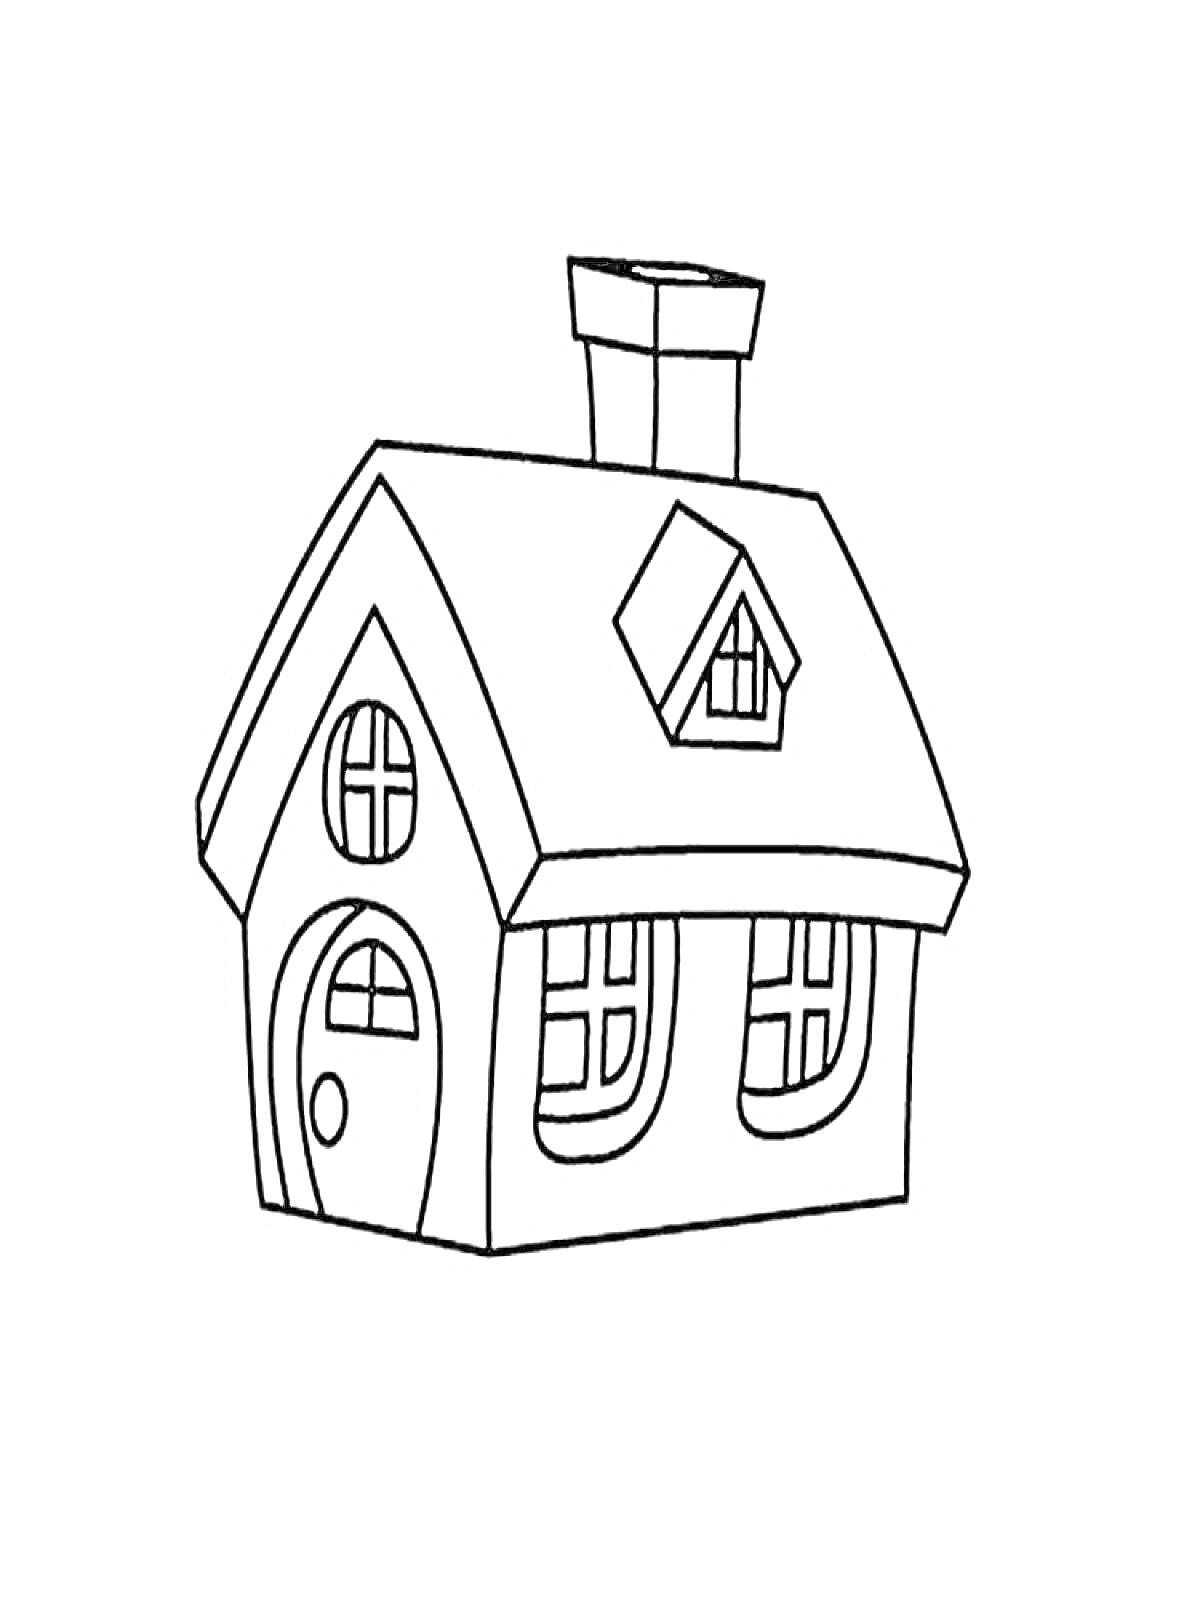 Раскраска Домик с крышей, дверью, окнами и дымоходом